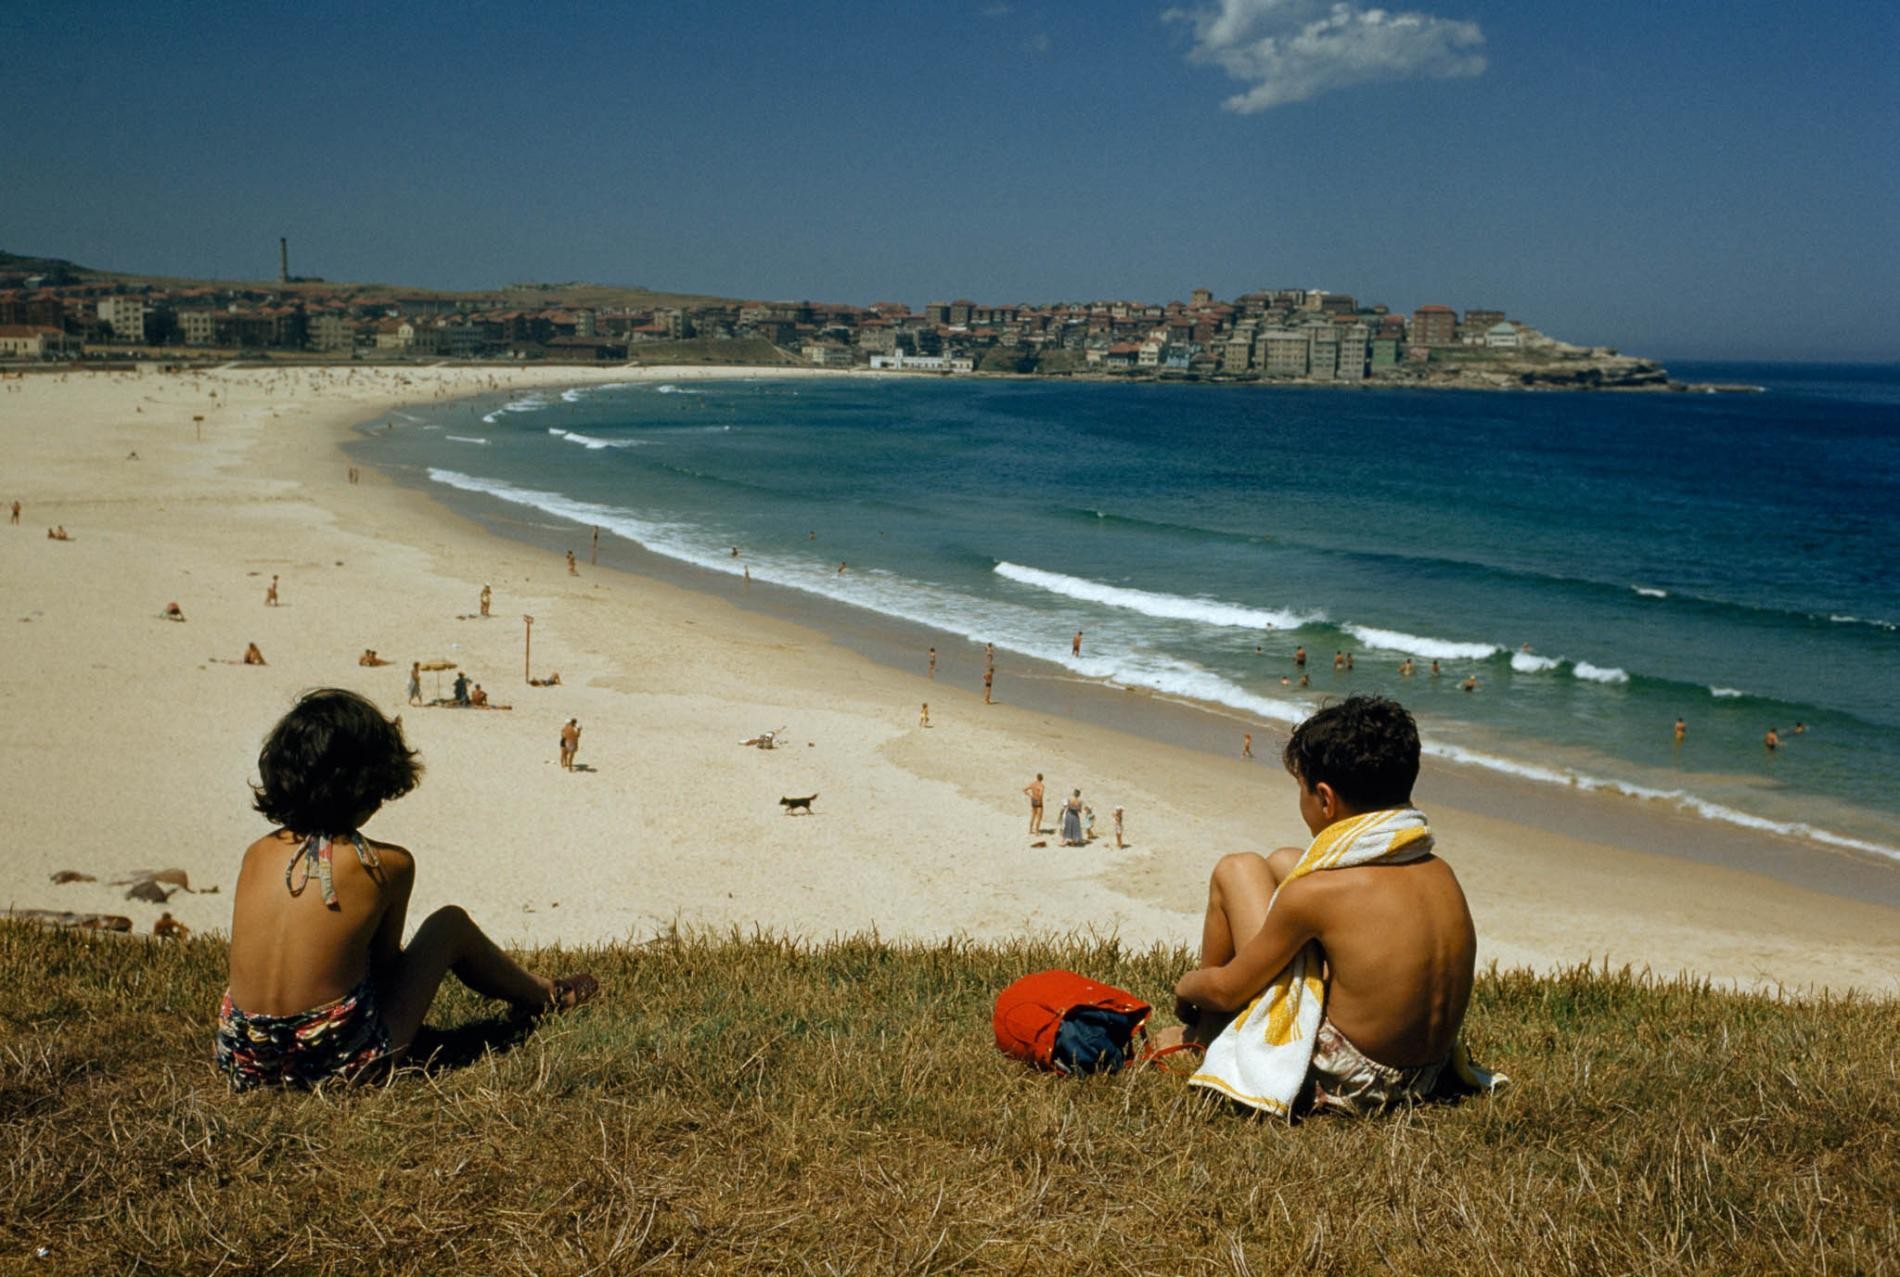 Пляж Бонди в Сиднее, Австралия, середина 1950-х. Фотограф Хауэлл Уолкер